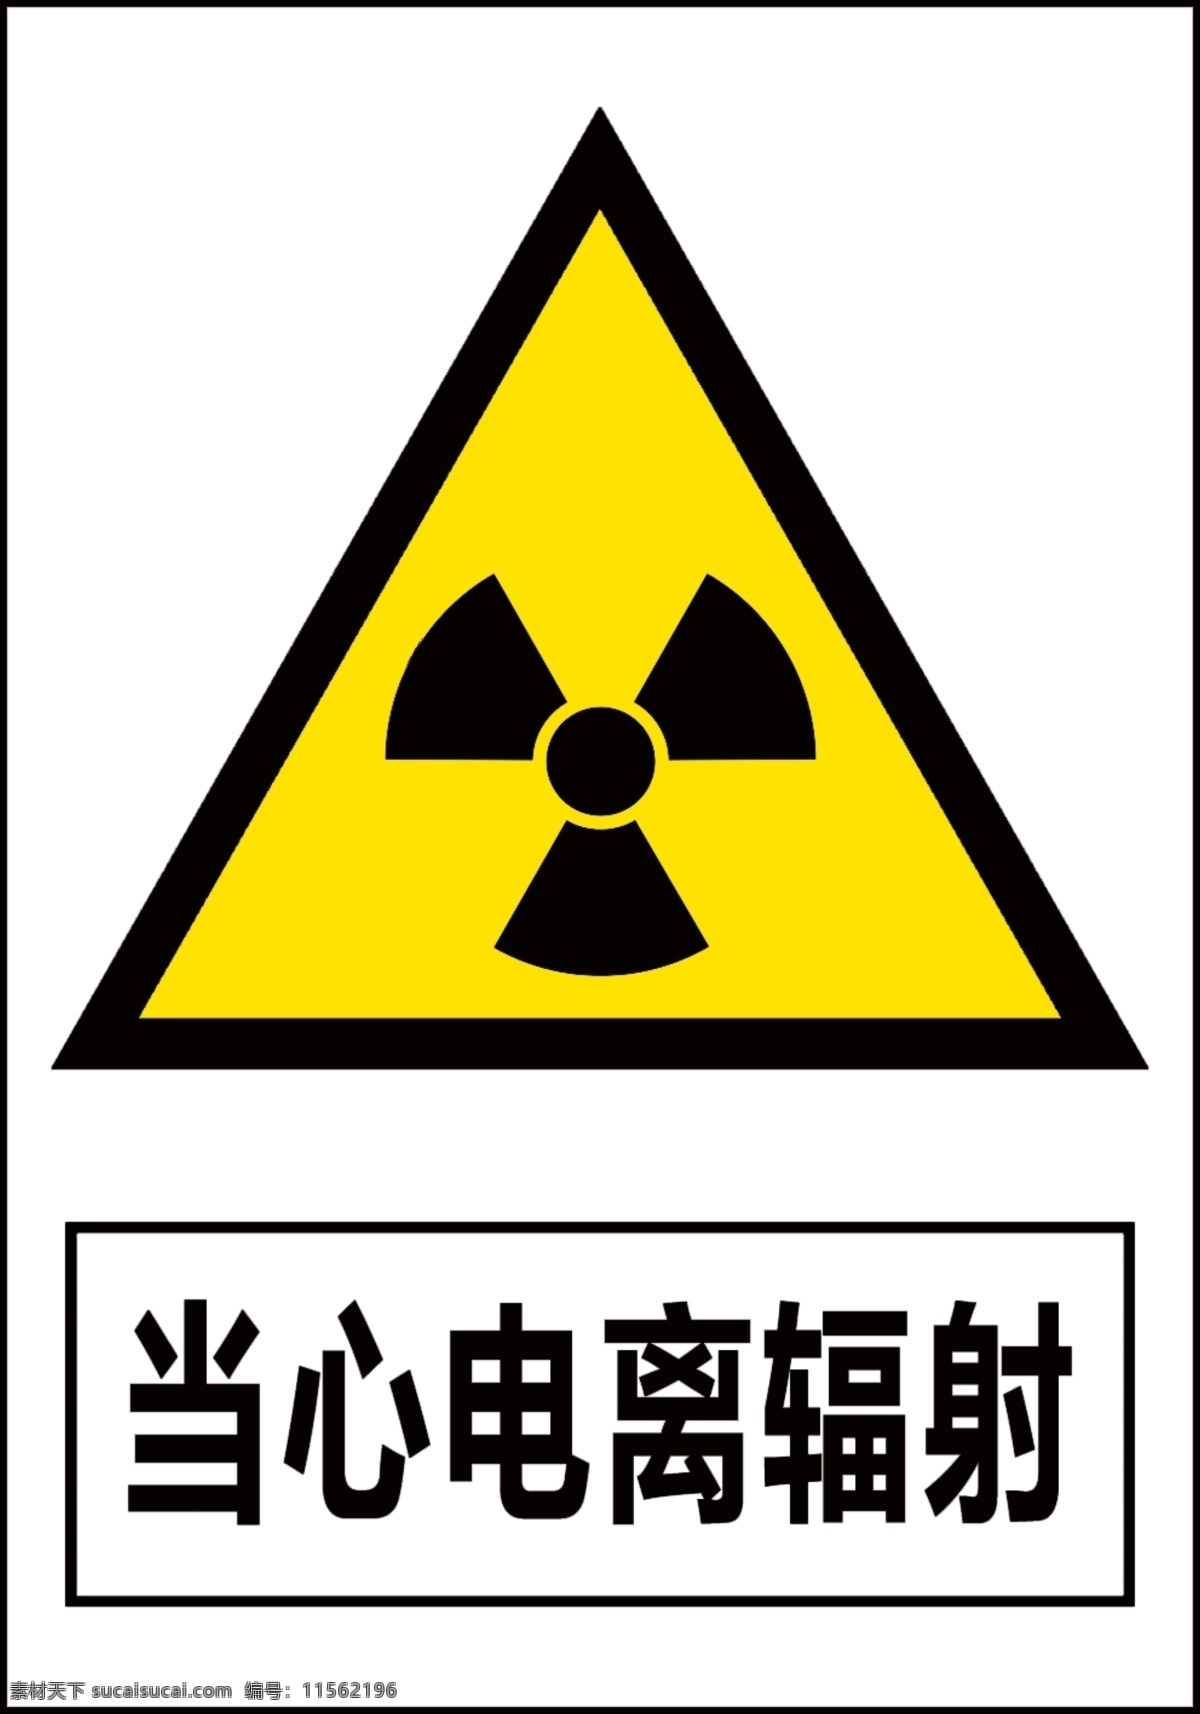 当心电离辐射 小心辐射 小心电离辐射 小心电离标志 电离辐射标志 禁止标识